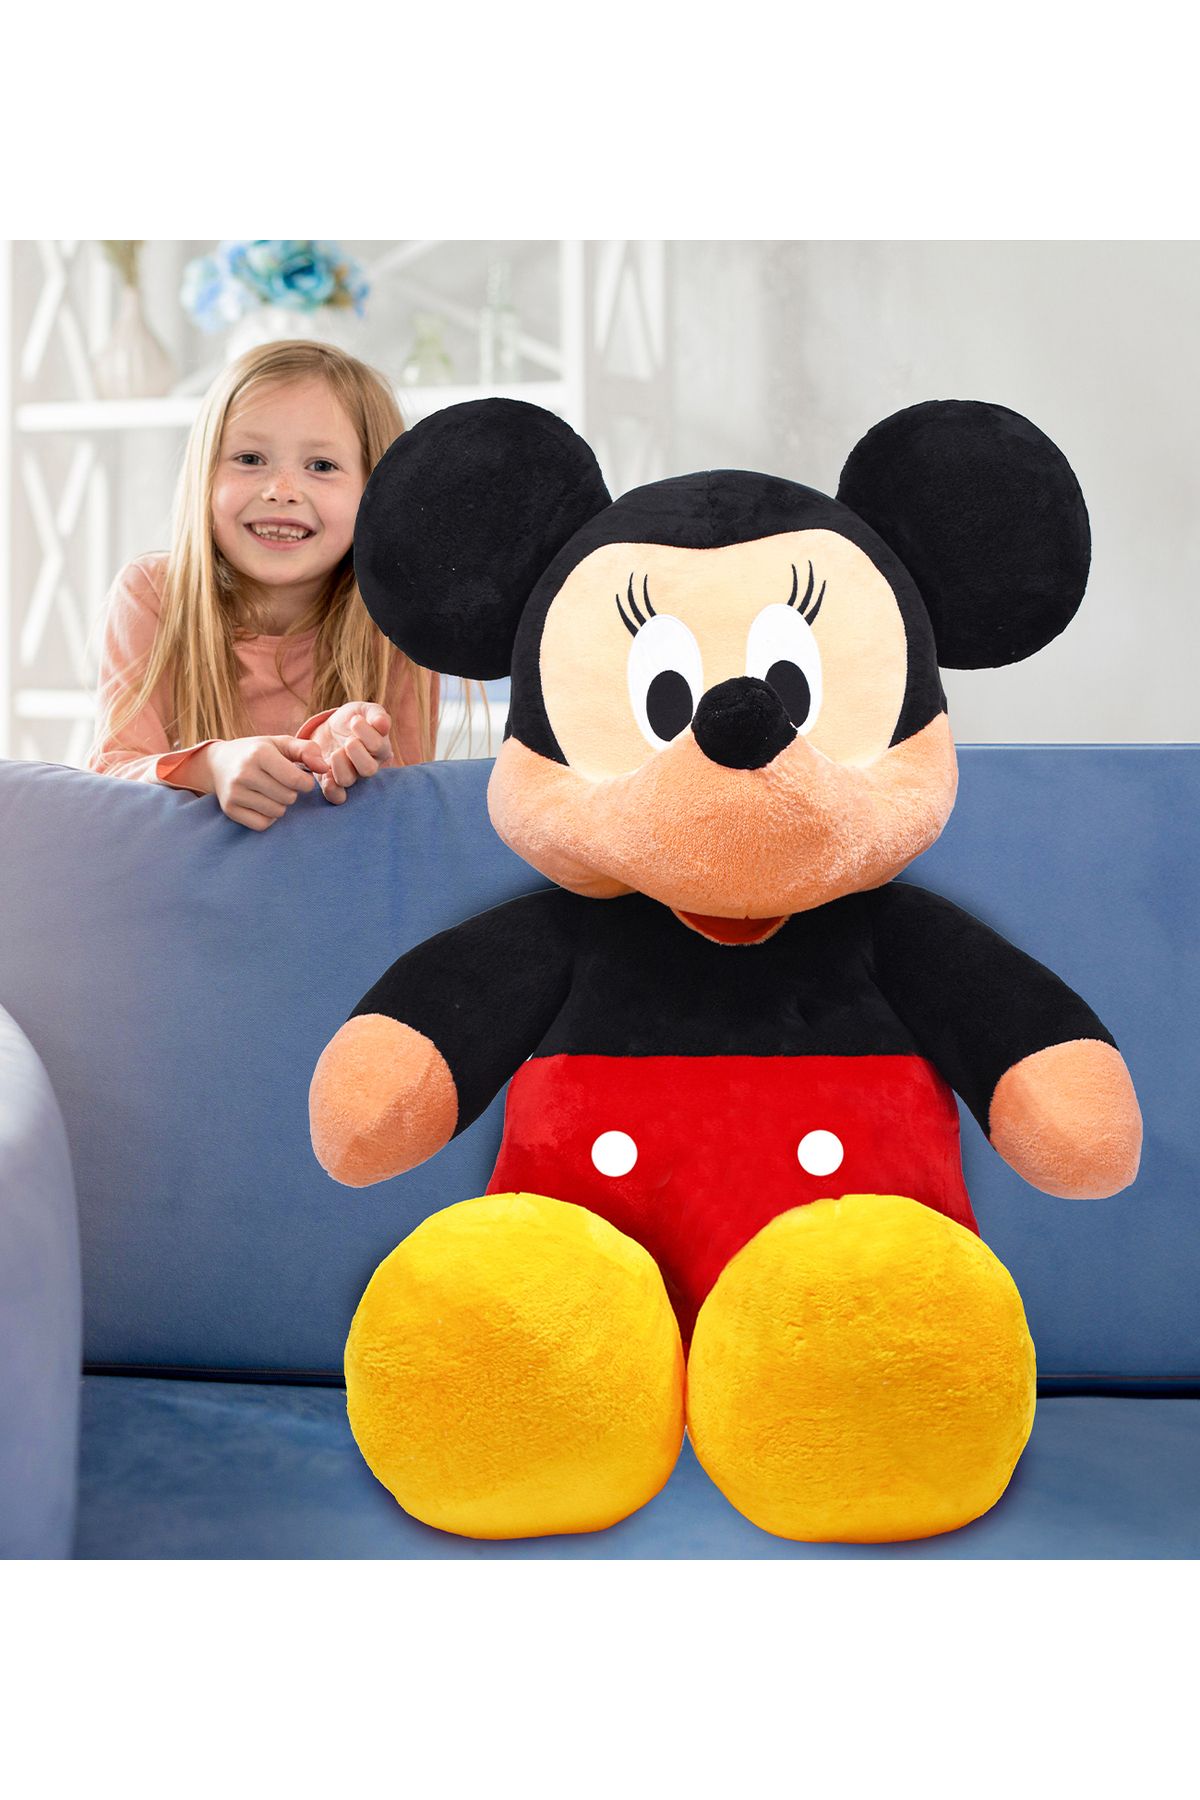 Özgüner Oyuncak Minnie Mouse Büyük Boy 120 cm Peluş